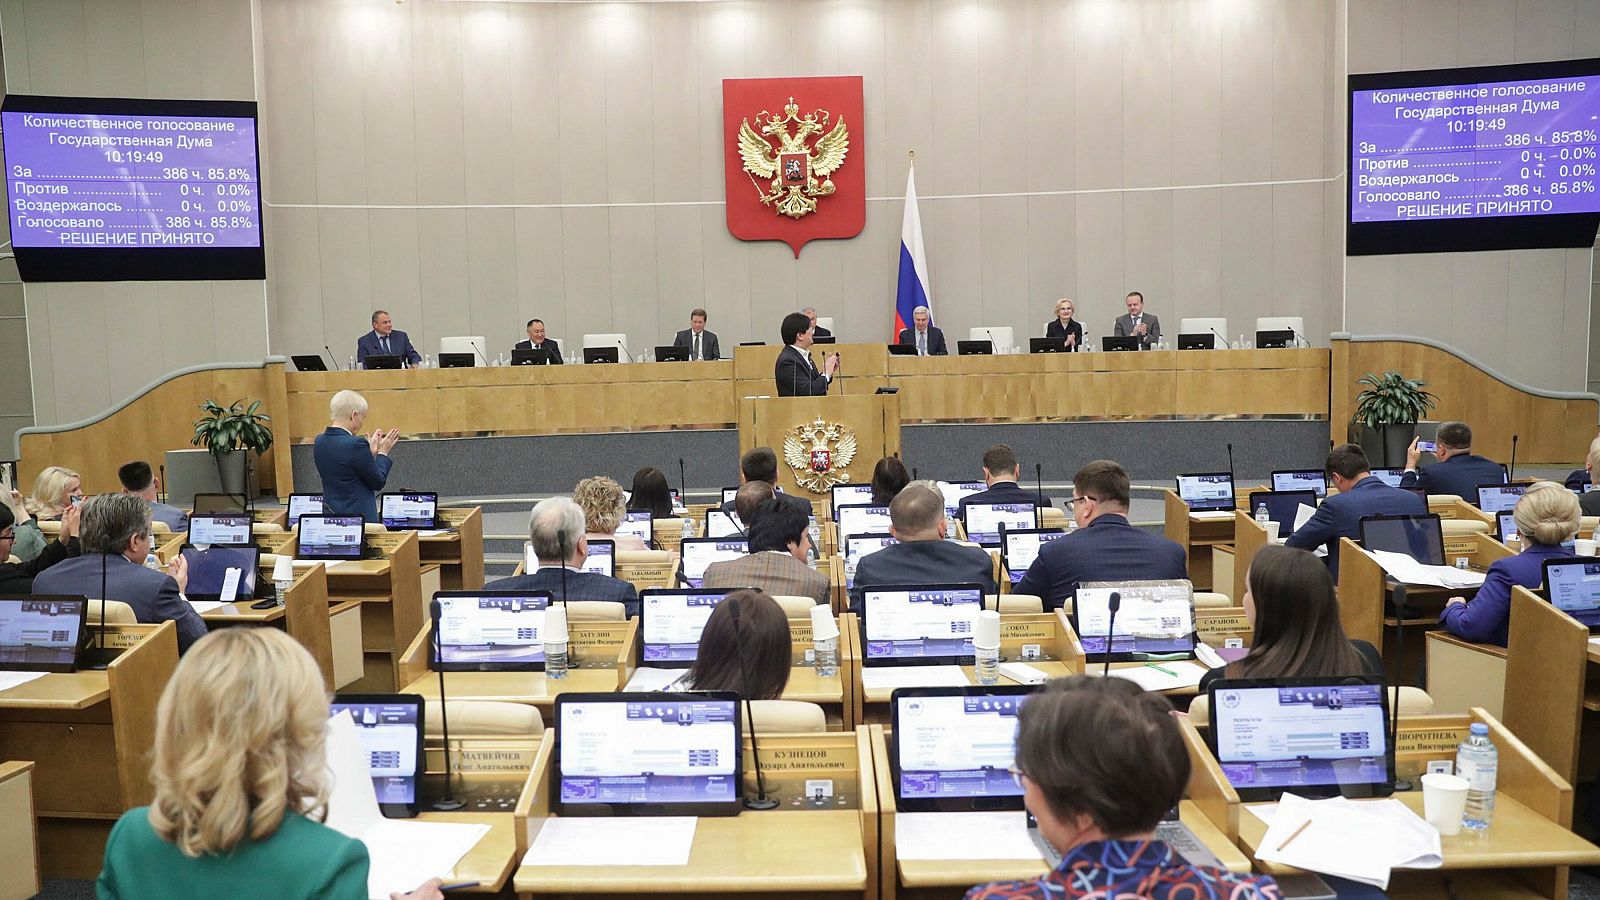 Fotografía de los diputados rusos votando durante la sesión plenaria de la Duma Estatal rusa en Moscú